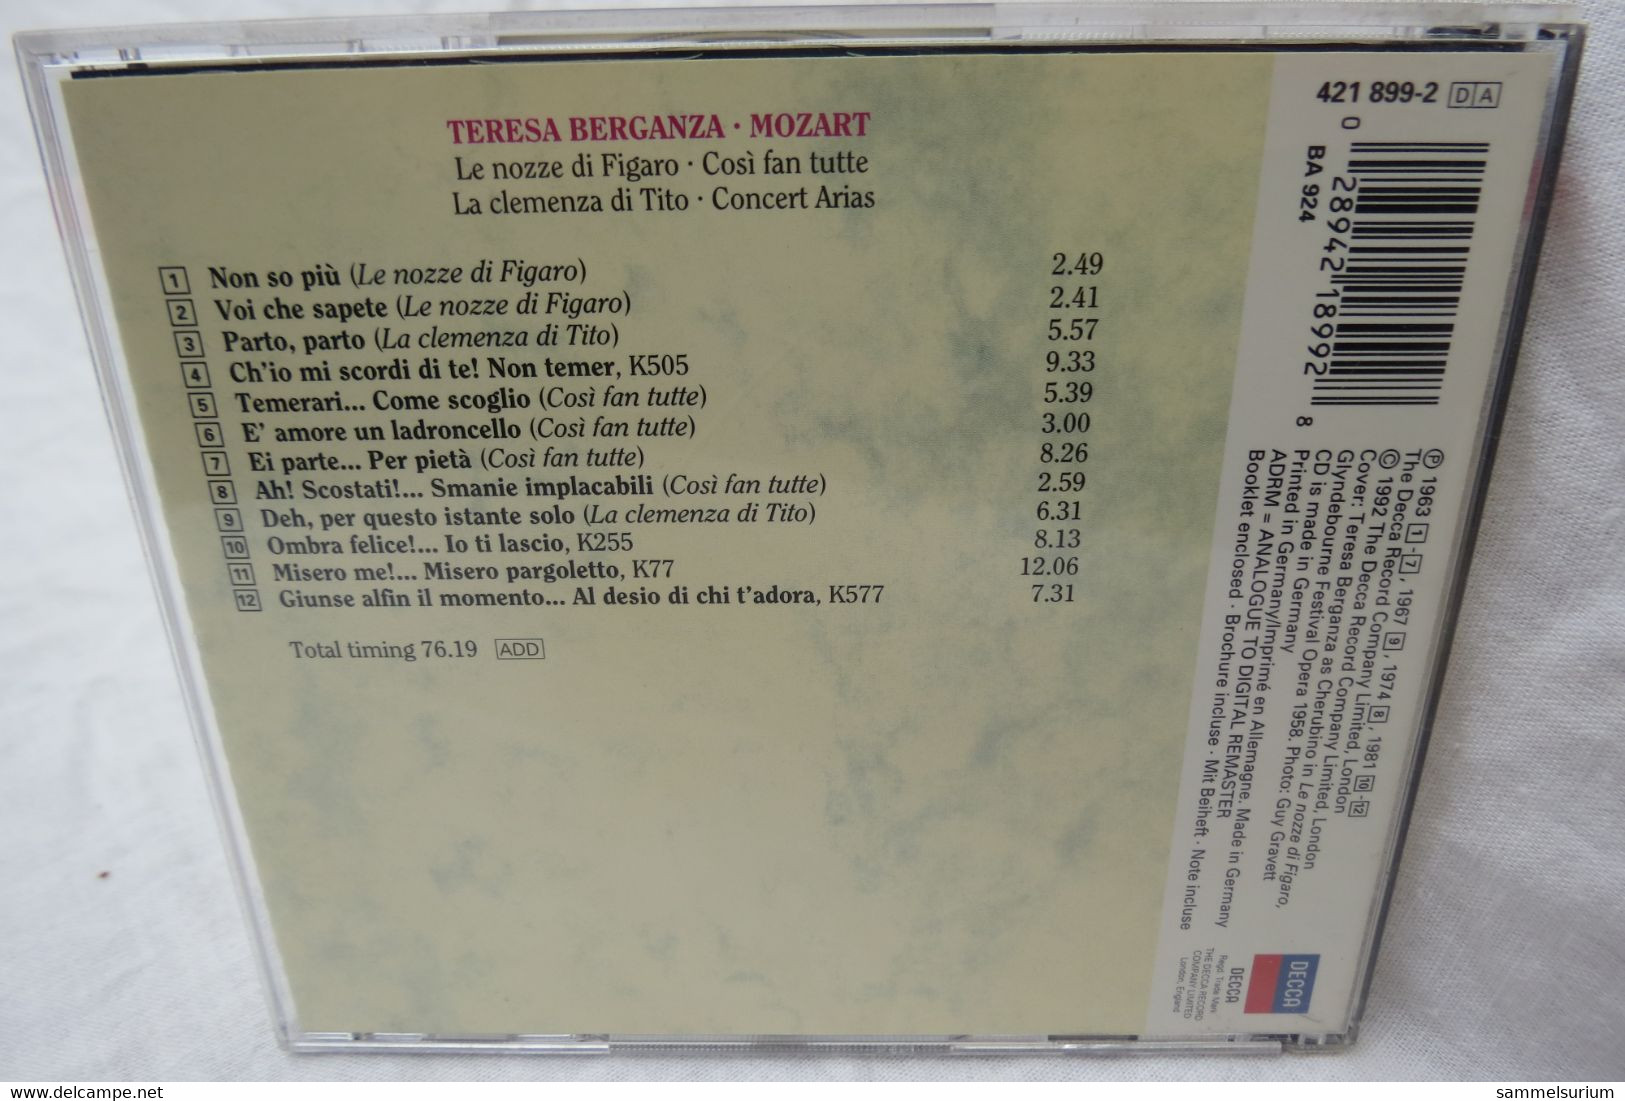 CD "Teresa Berganza" Mozart, Opern Gala - Opéra & Opérette